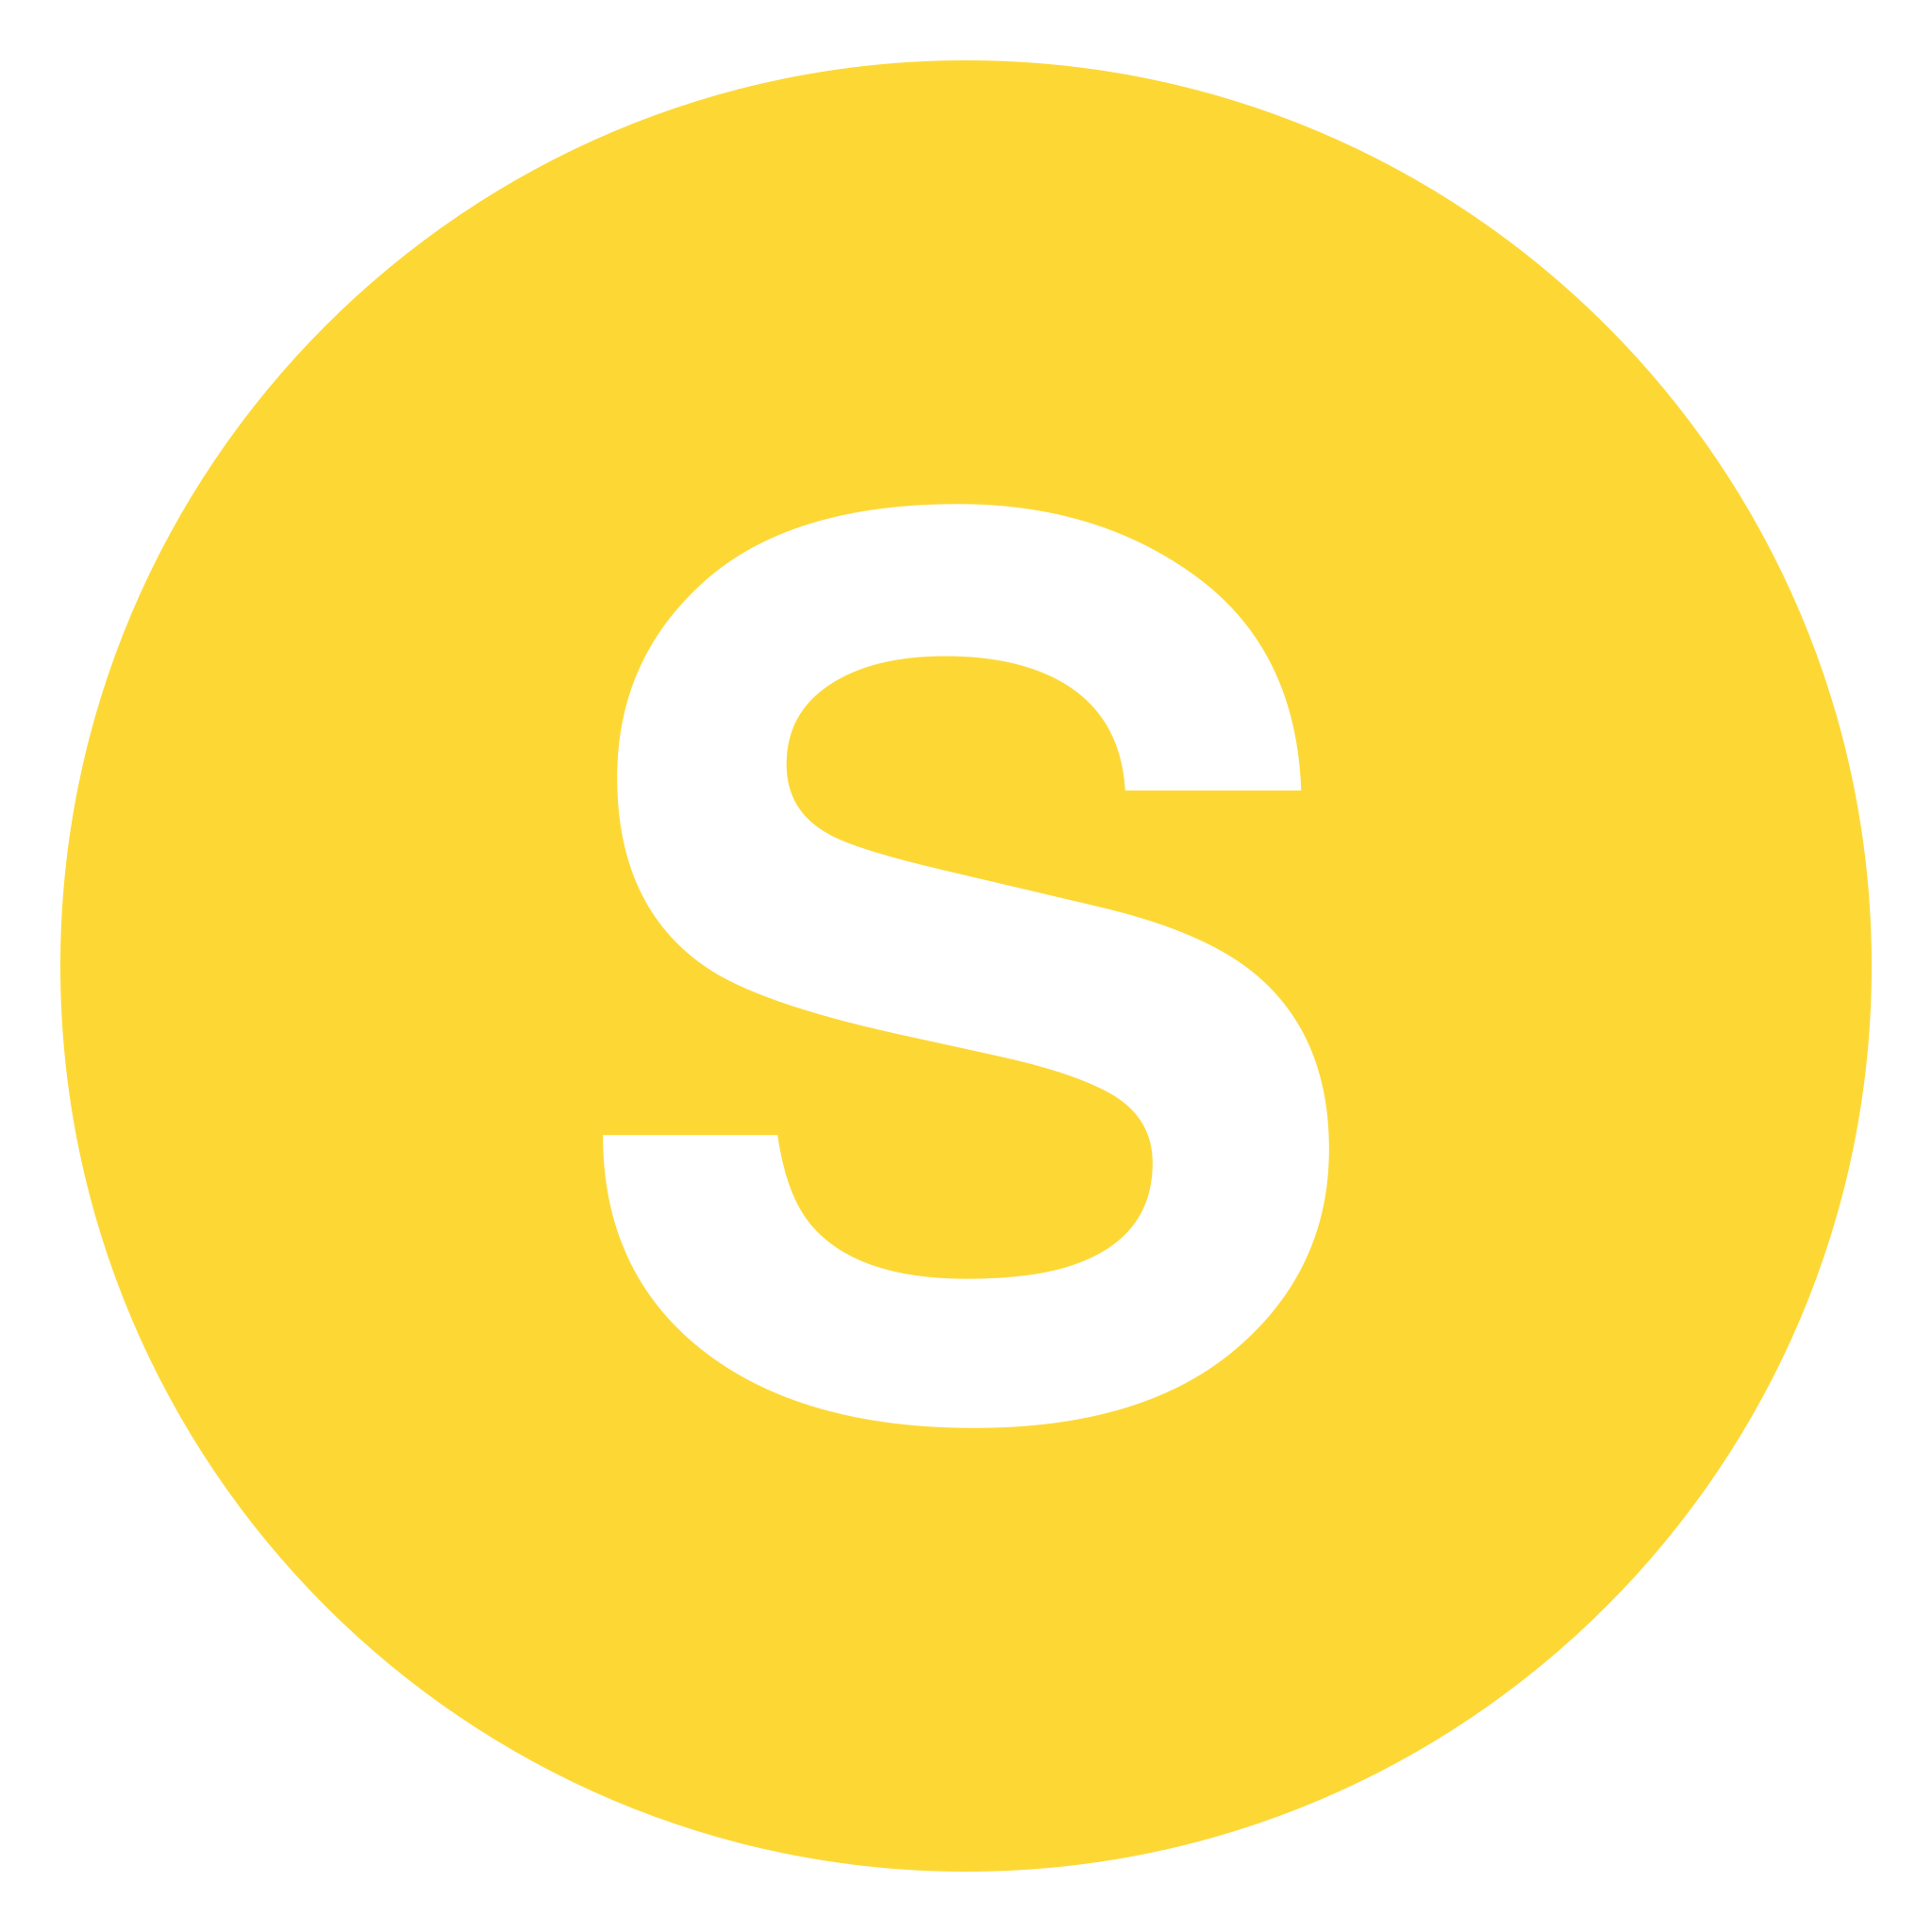 S 